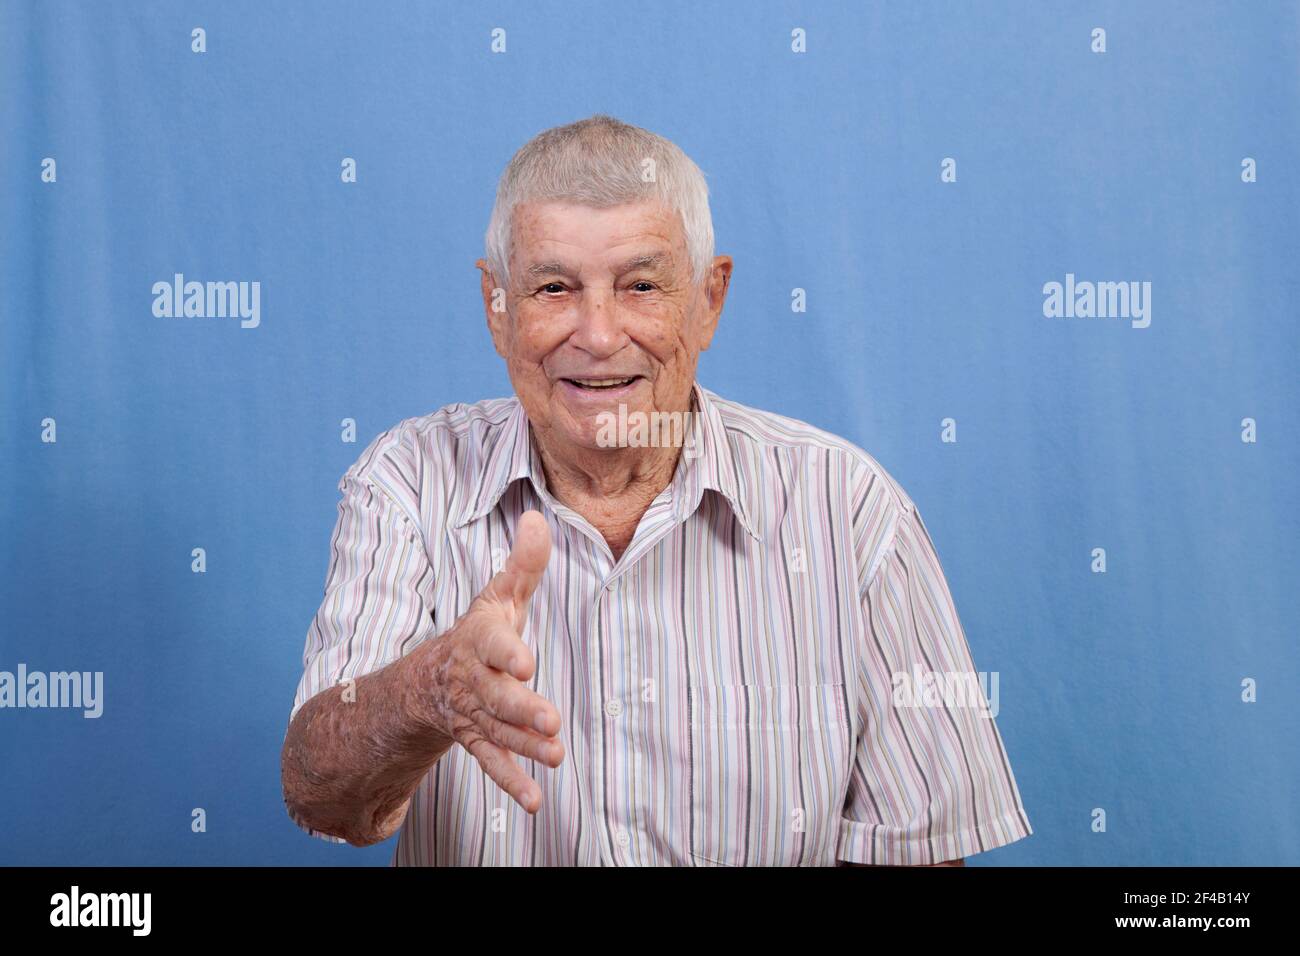 Uomo anziano attivo felice con i capelli grigi e una pelle danneggiata dal sole che si allontana per scuotere le mani nel saluto mentre sorride. Foto Stock